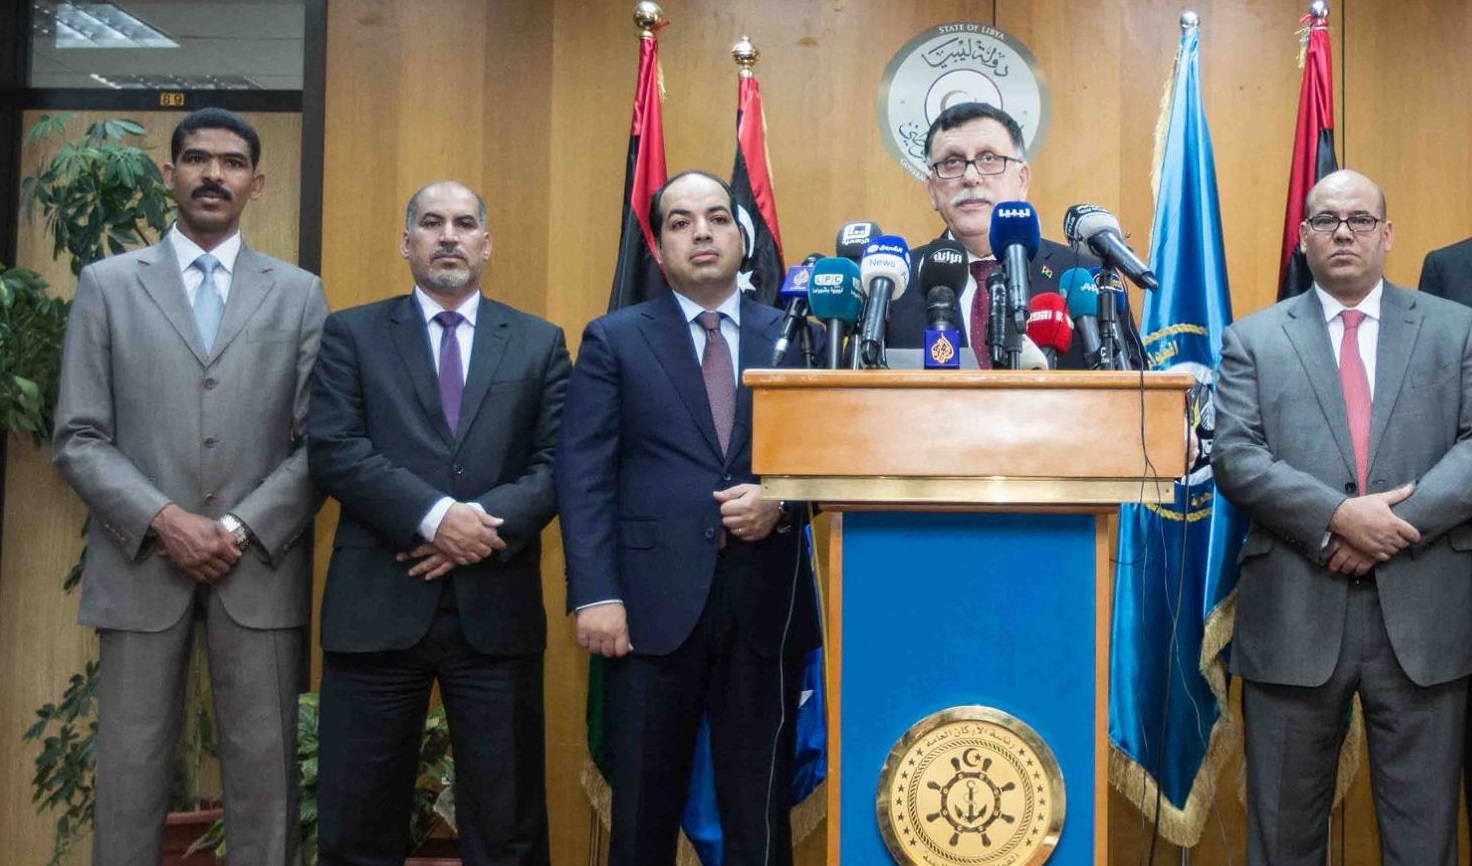 المجلس الرئاسي يرحب بعودة أهالي المشاشية إلى مناطقهم ويدعم مبادرة السلم الاجتماعي في ورشفانة